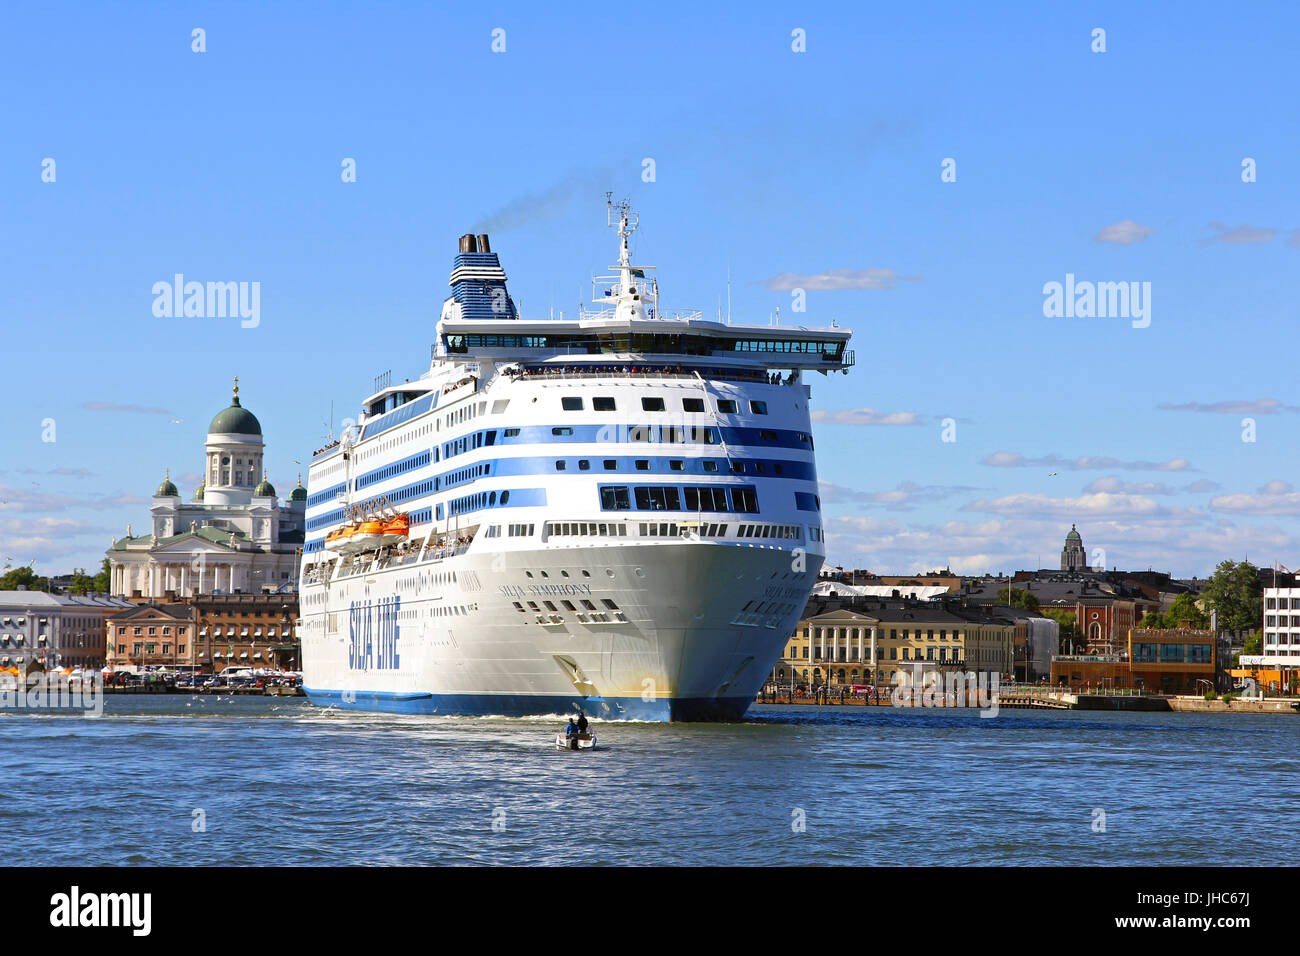 HELSINKI, Finnland - 28. Juni 2017: Silja Symphony Kreuzfahrtfähre fährt vom Südhafen, Helsinki, Stockholm, Schweden an einem sonnigen Tag des Sommers. Stockfoto